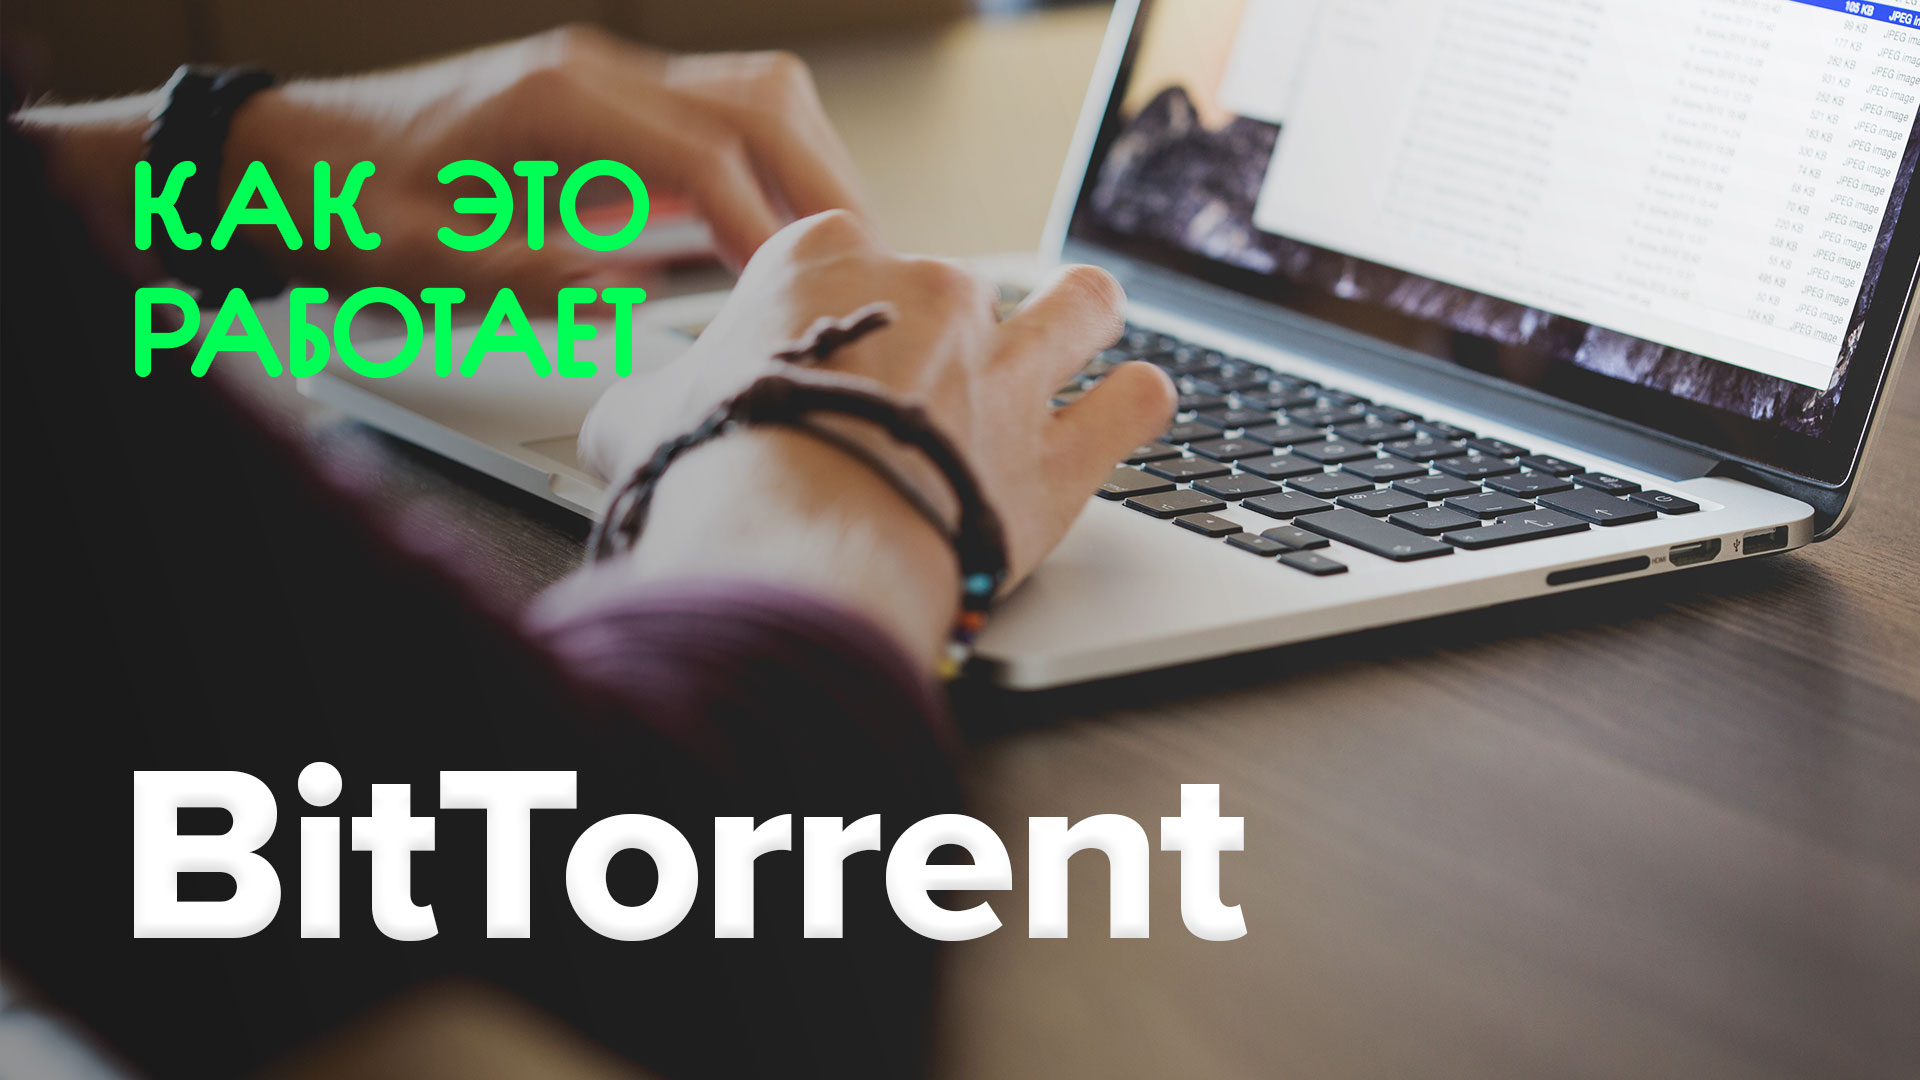 Come funziona? | BitTorrent